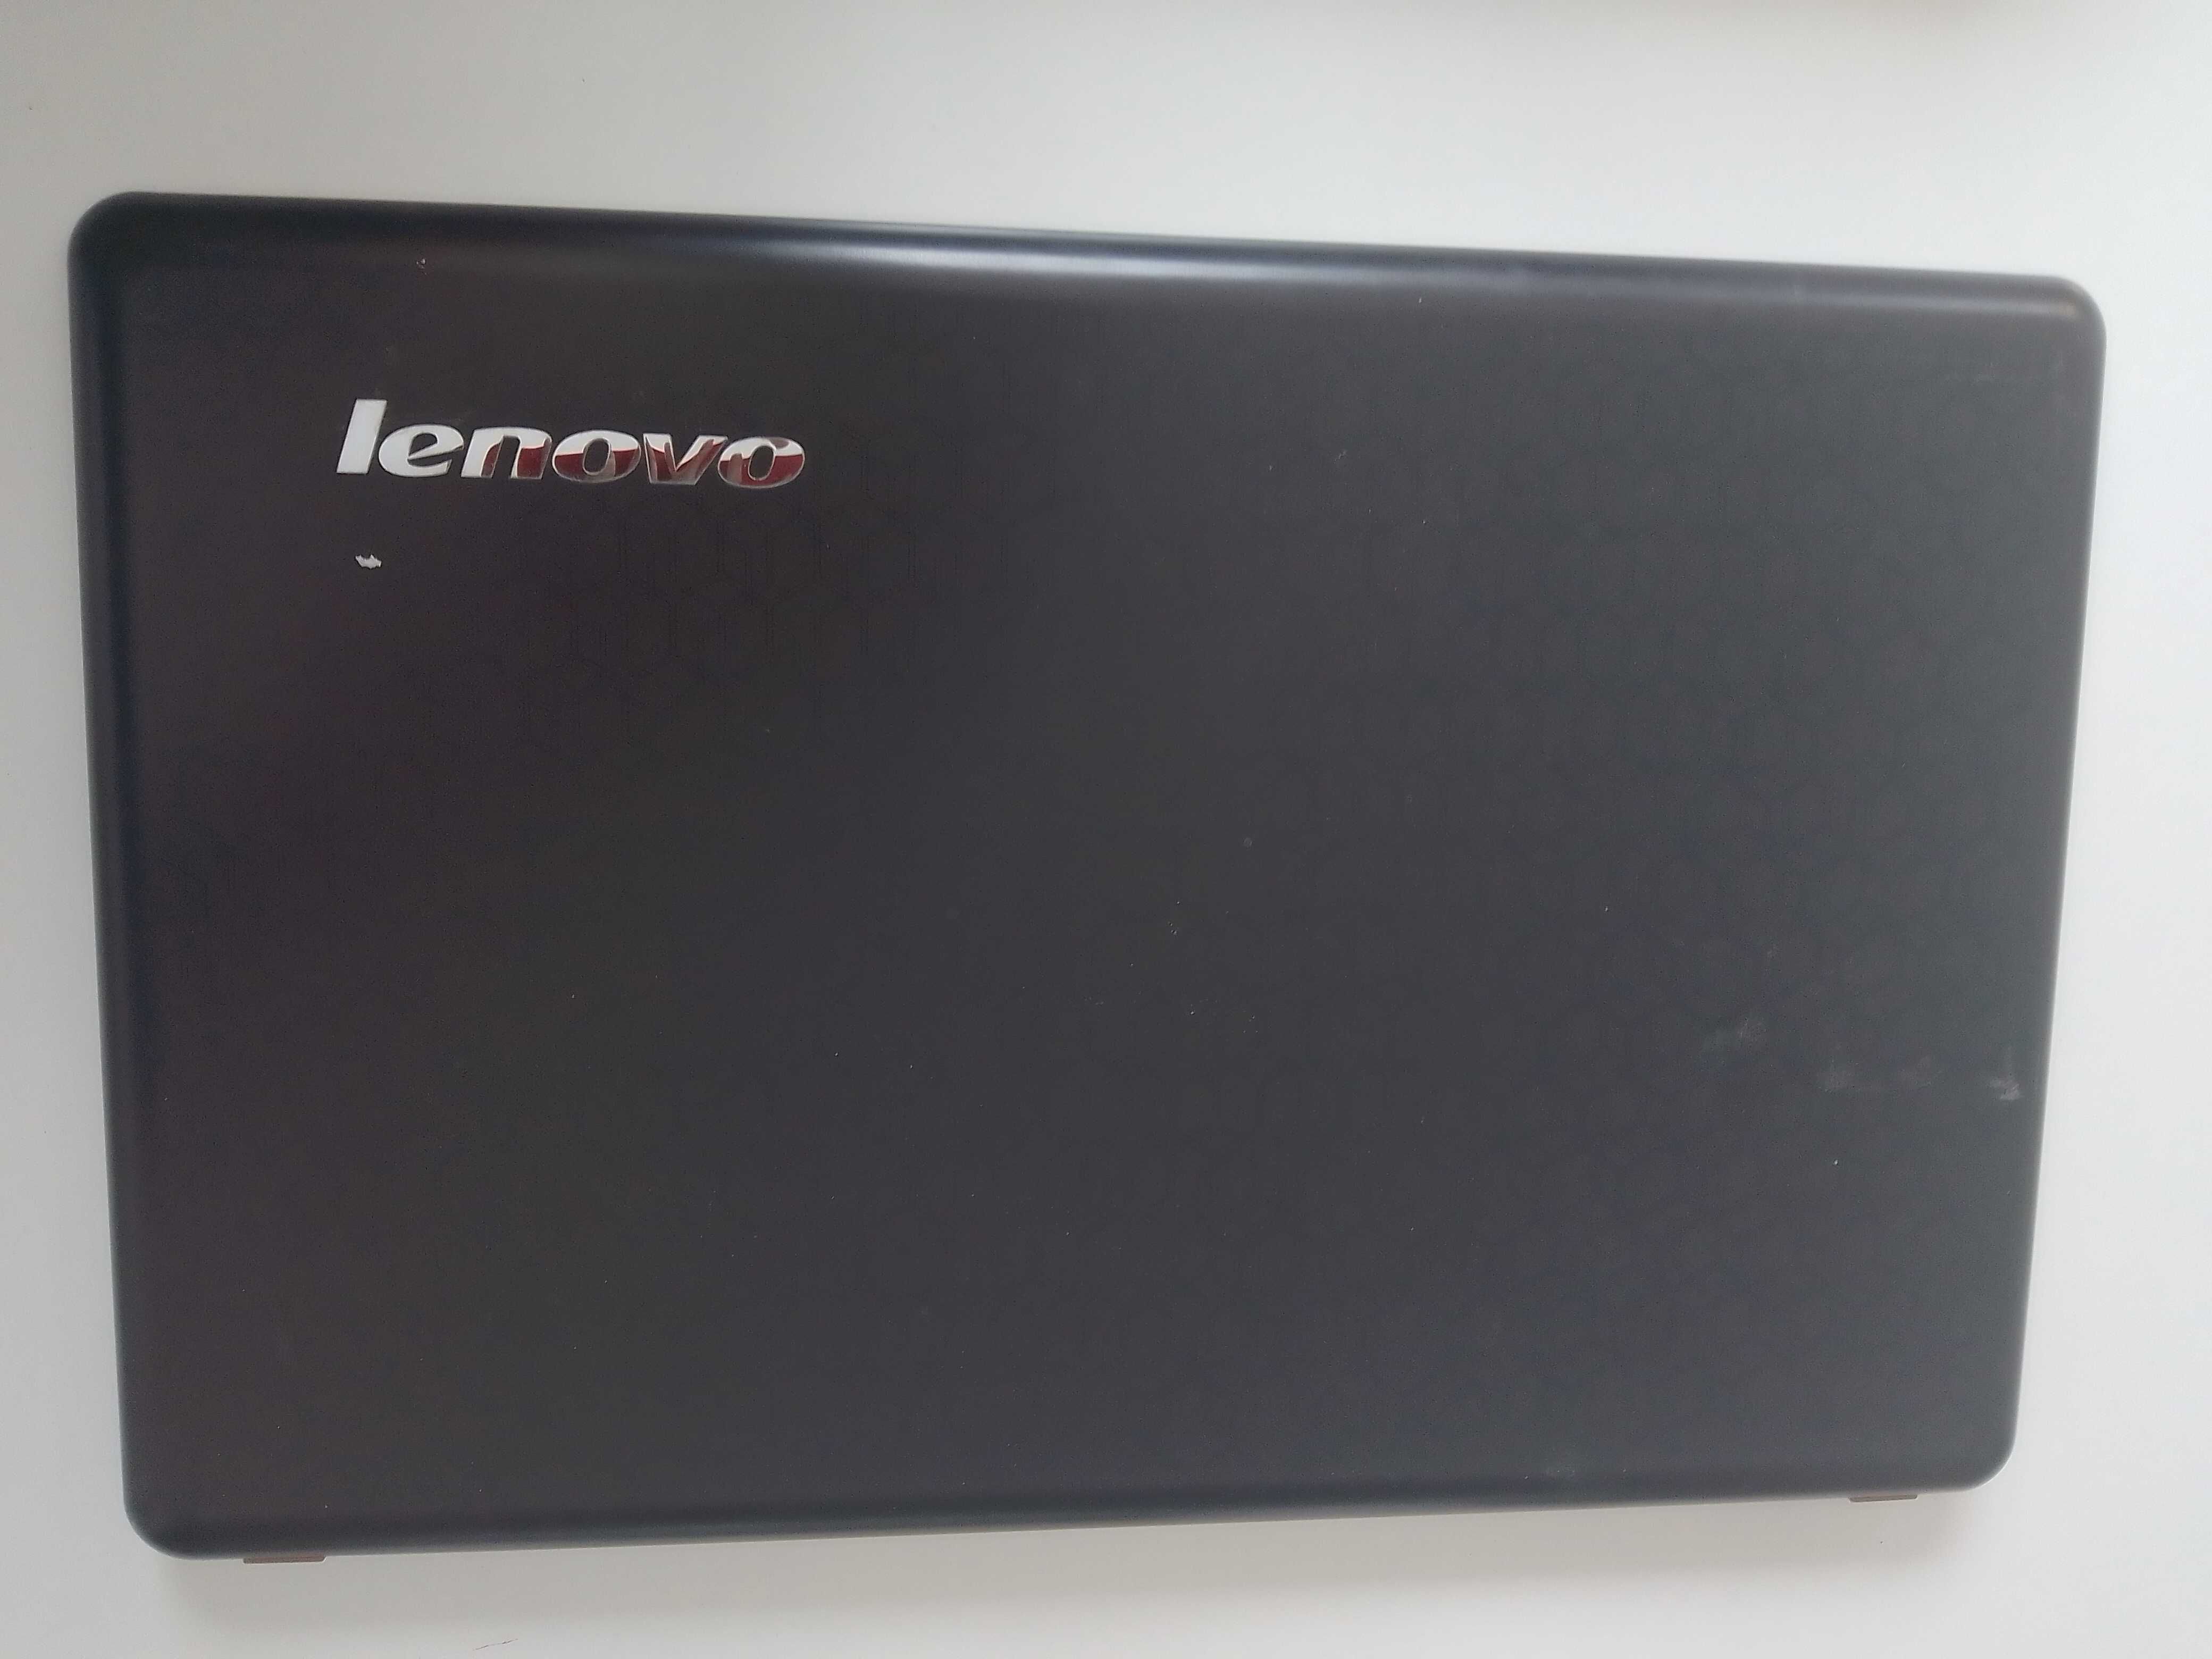 Klapa matrycy obudowa Lenovo IdeaPad Y550 (001900)